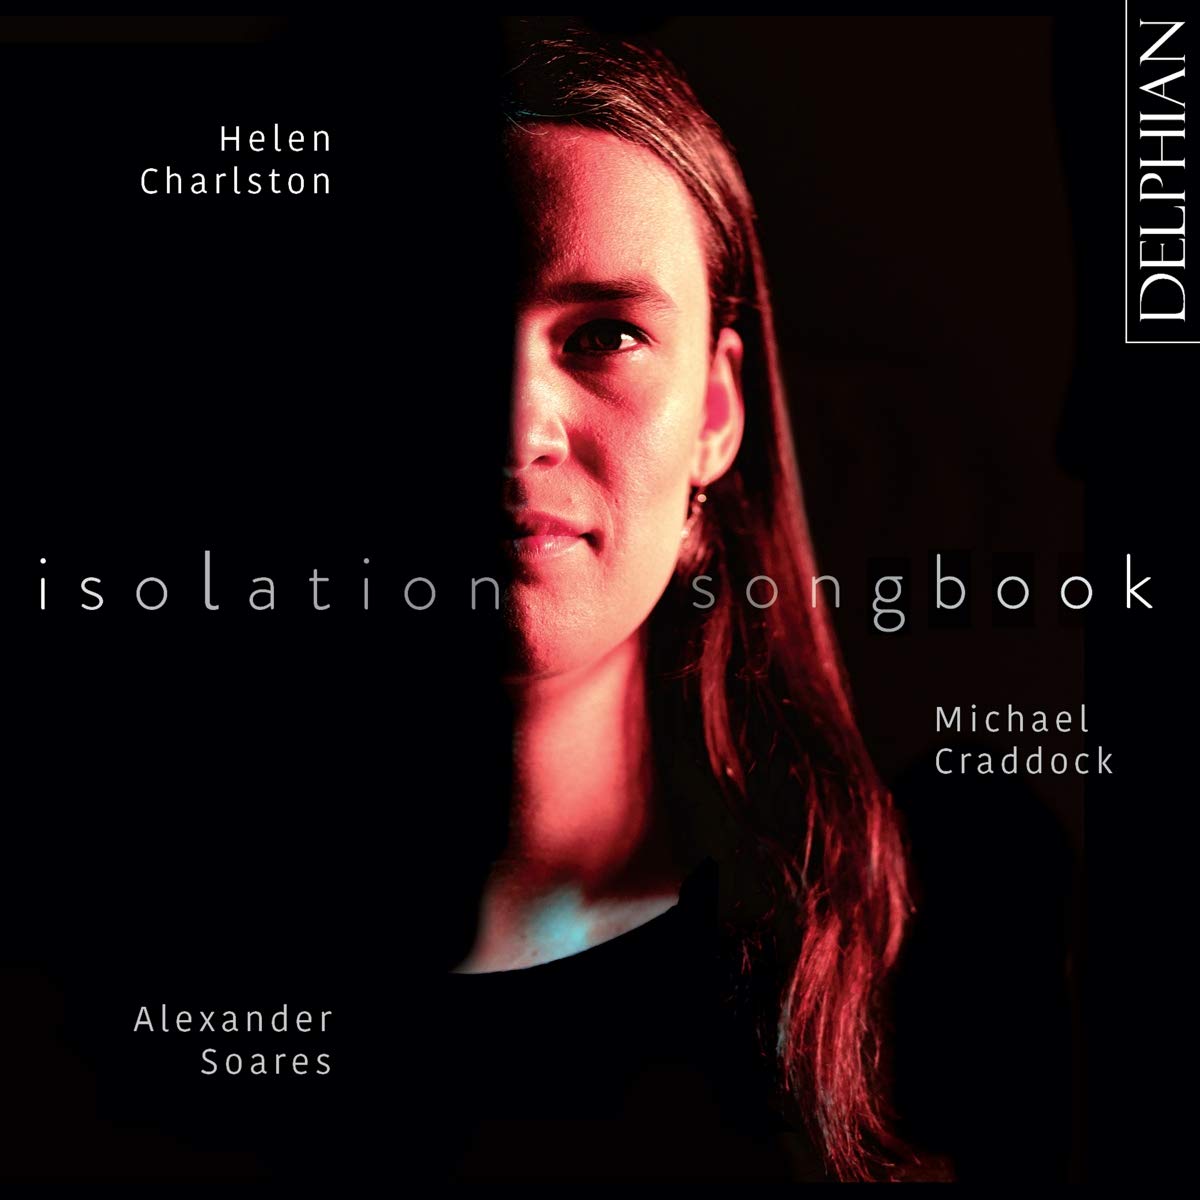 Audio Cd Helen Charlston / Michael Craddock / Alexander Soares: Isolation Songbook NUOVO SIGILLATO, EDIZIONE DEL 04/03/2021 SUBITO DISPONIBILE